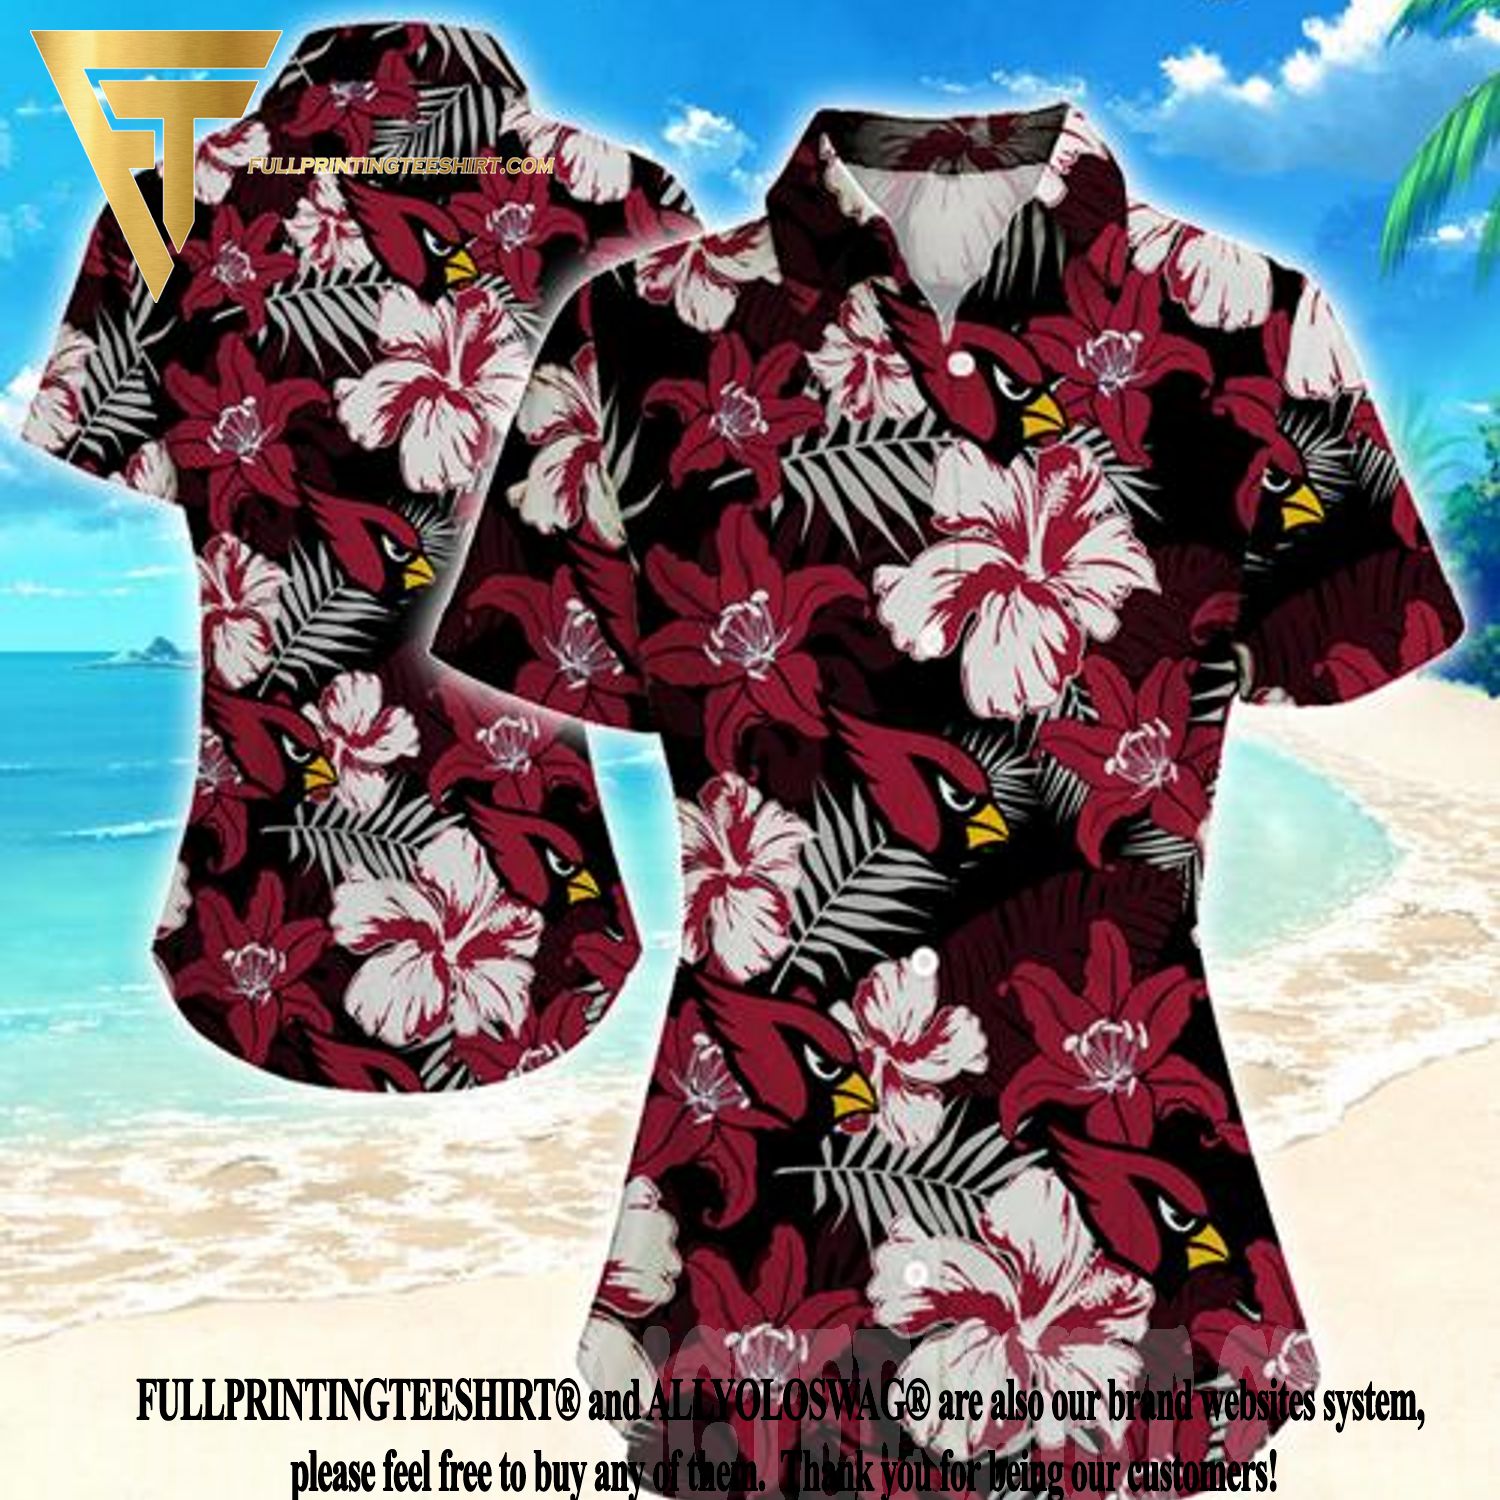 Arizona Diamondbacks MLB Hawaiian Shirt For Men Women 4TH Of July